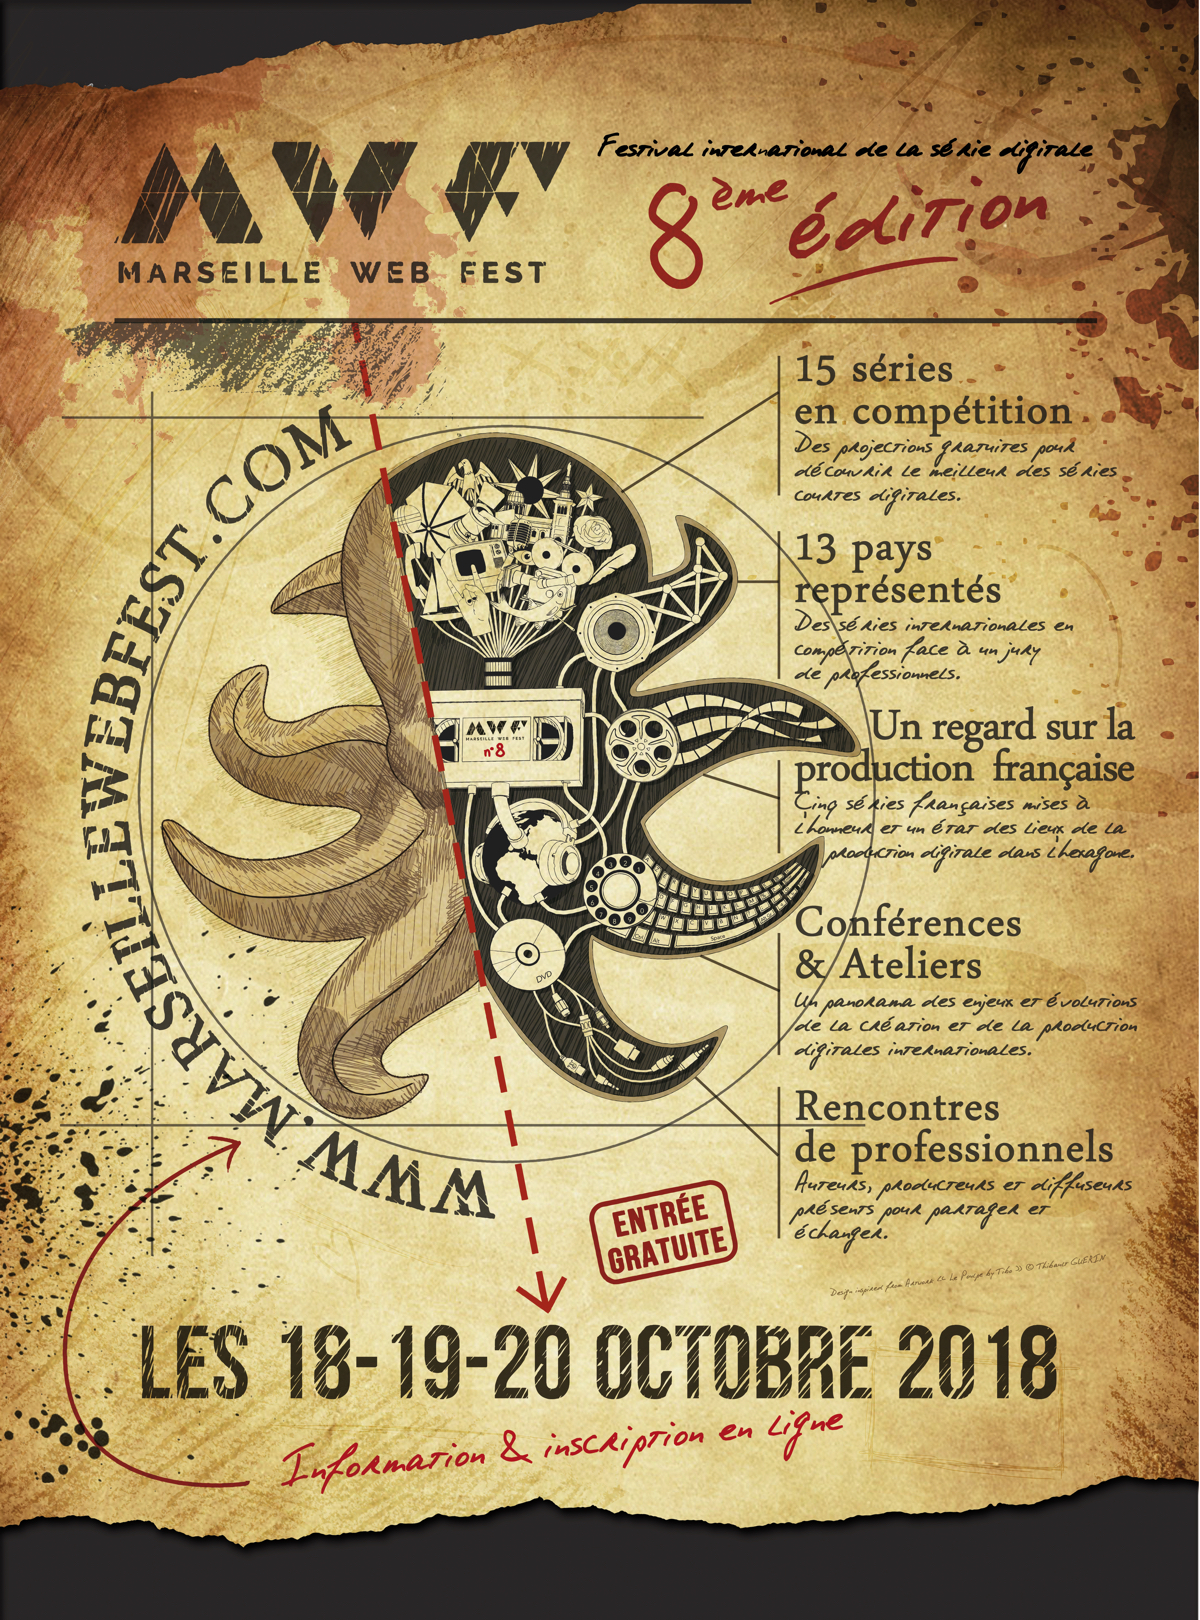 Affiche Marseille Web Fest - Bilan de la 8ème édition en Ligne (2018) Festival International de la série digitale